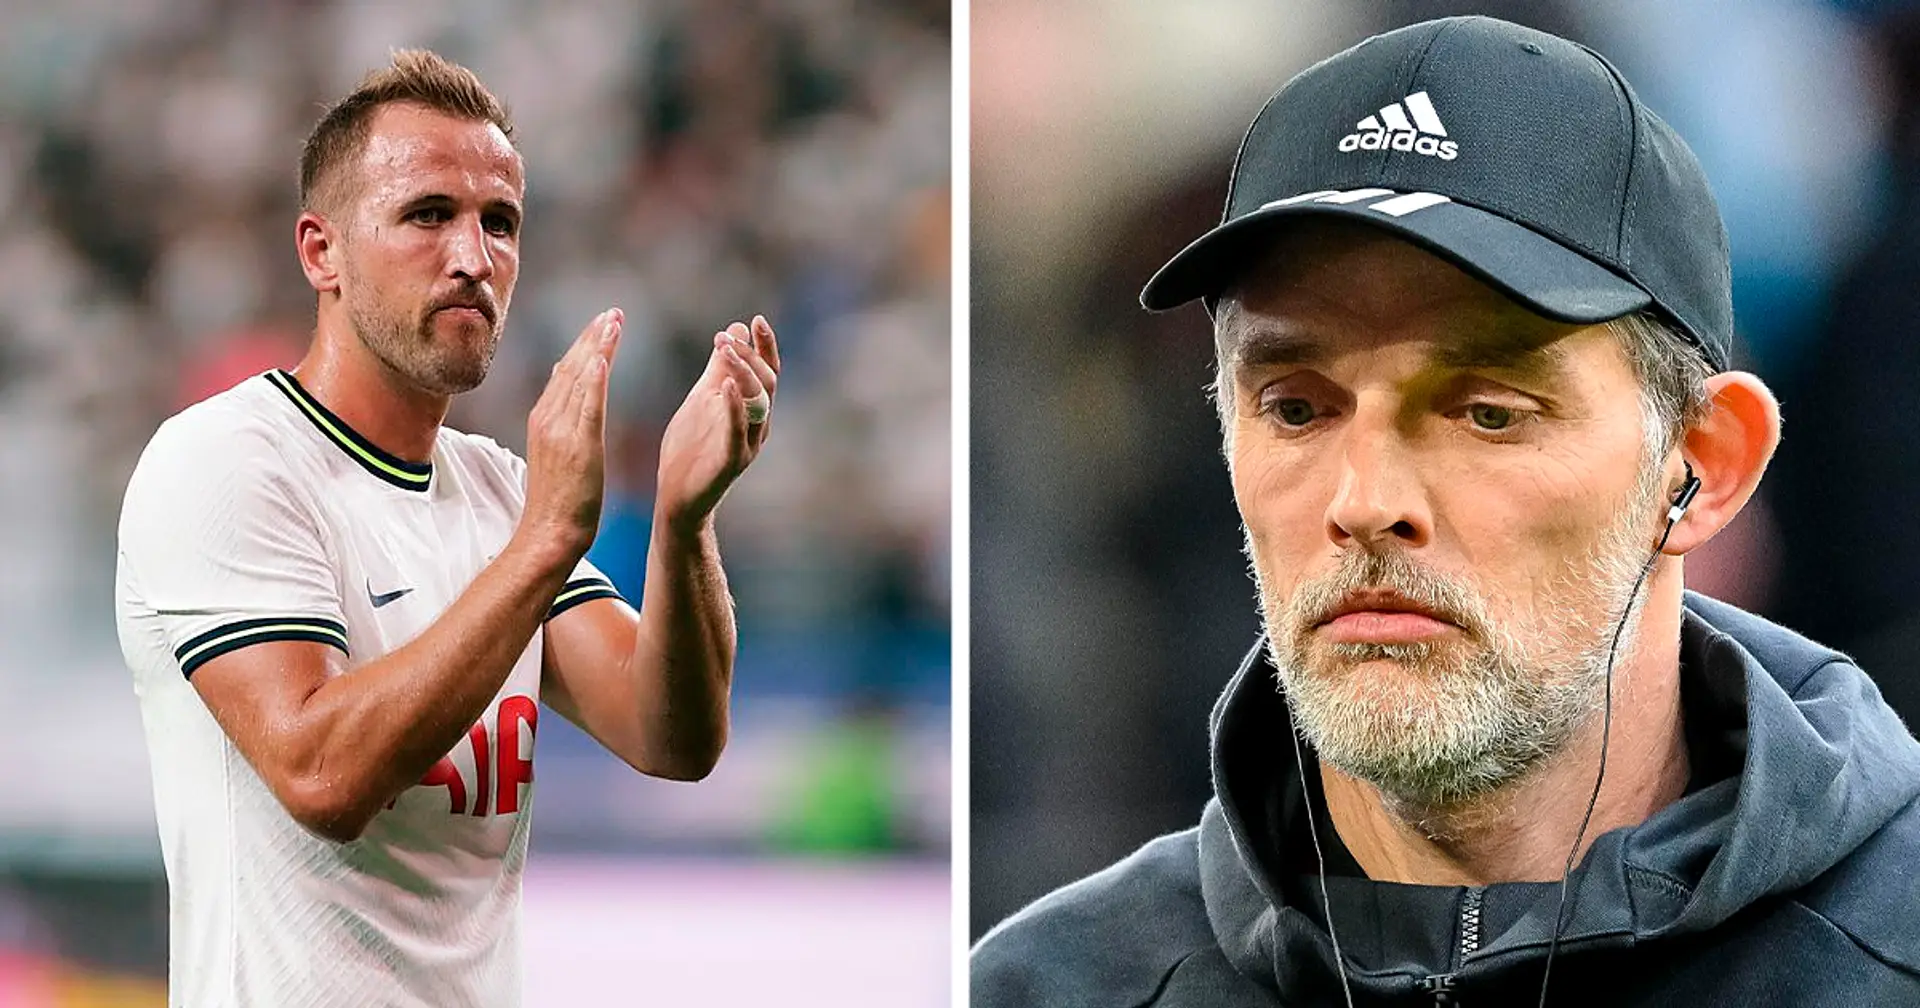 Bayern bereitet zweites Angebot für Kane vor - Tottenham will ihn nicht verkaufen, neuer Trainer drängt auf Verbleib